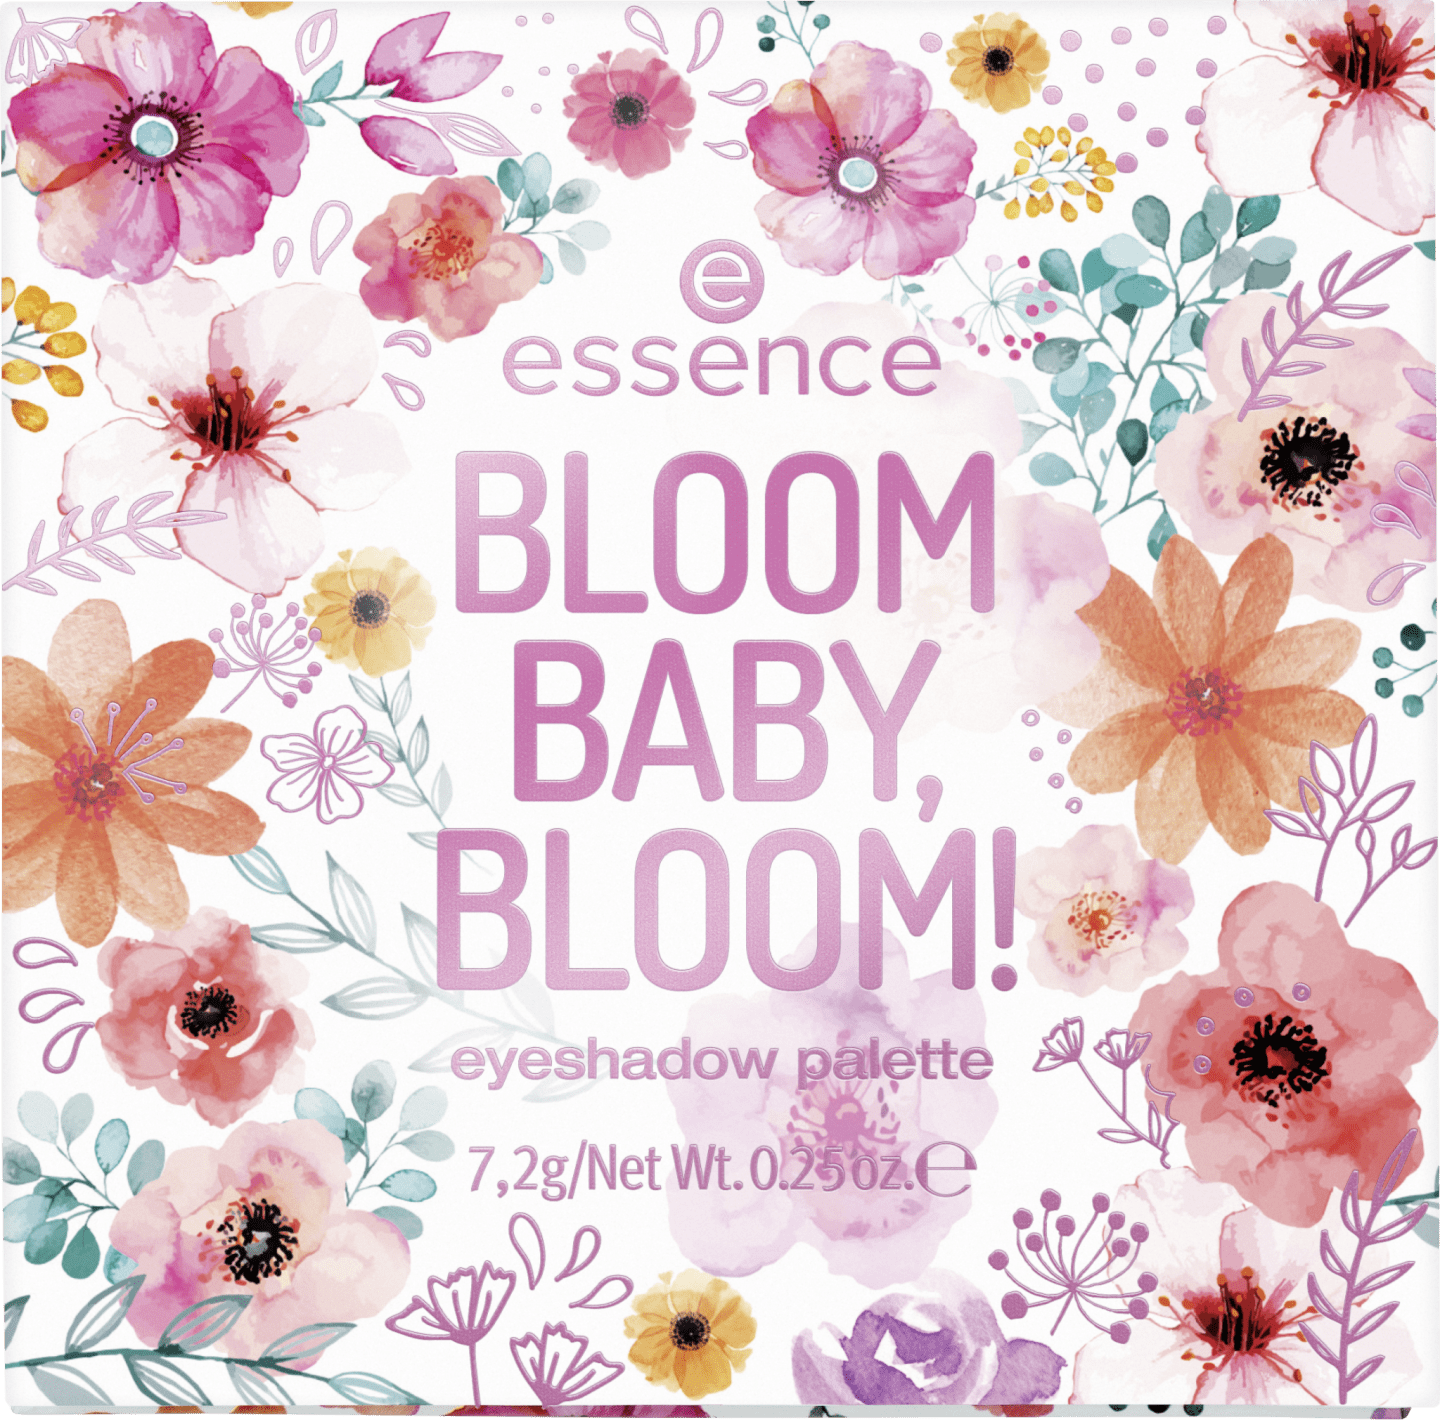 Essence Bloom Baby Bloom